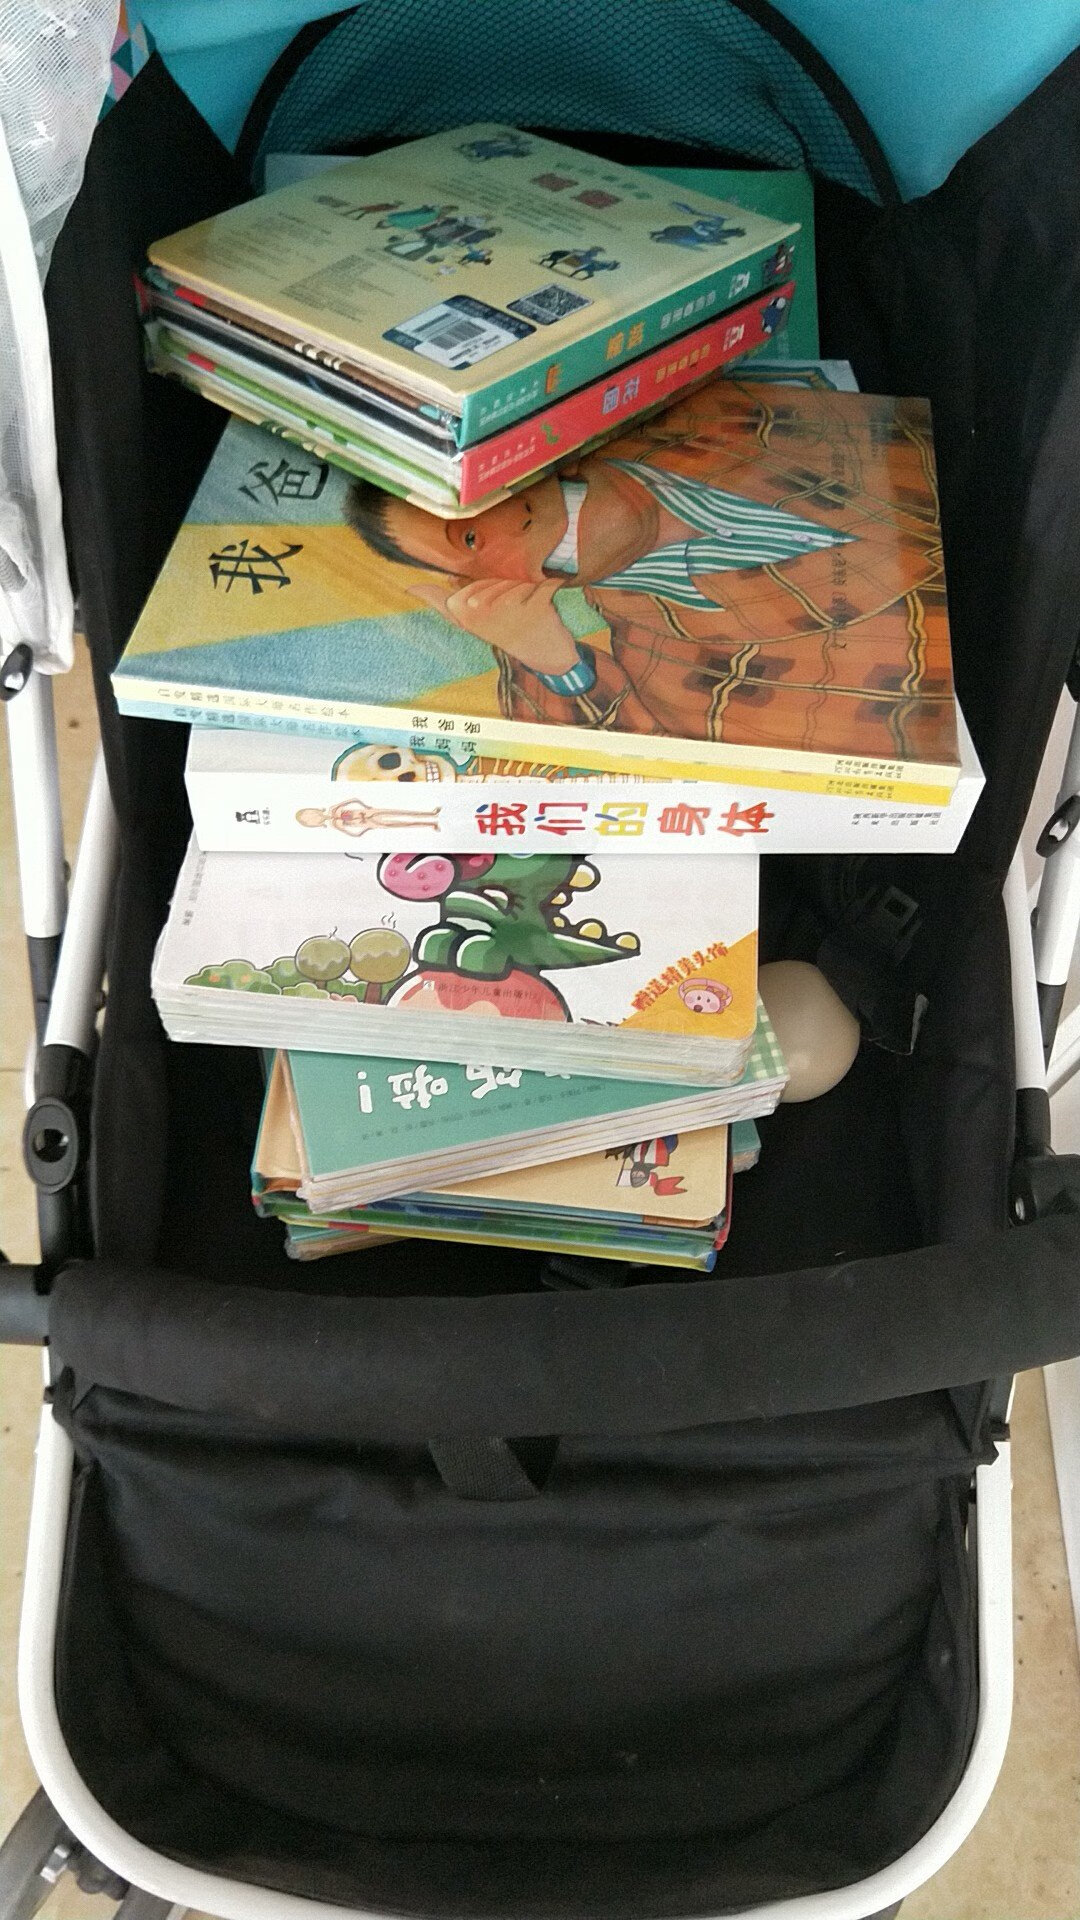 书收到了就是快呀，最关键的是正品呀，宝宝很喜欢也喜欢看 还会一张买书的。